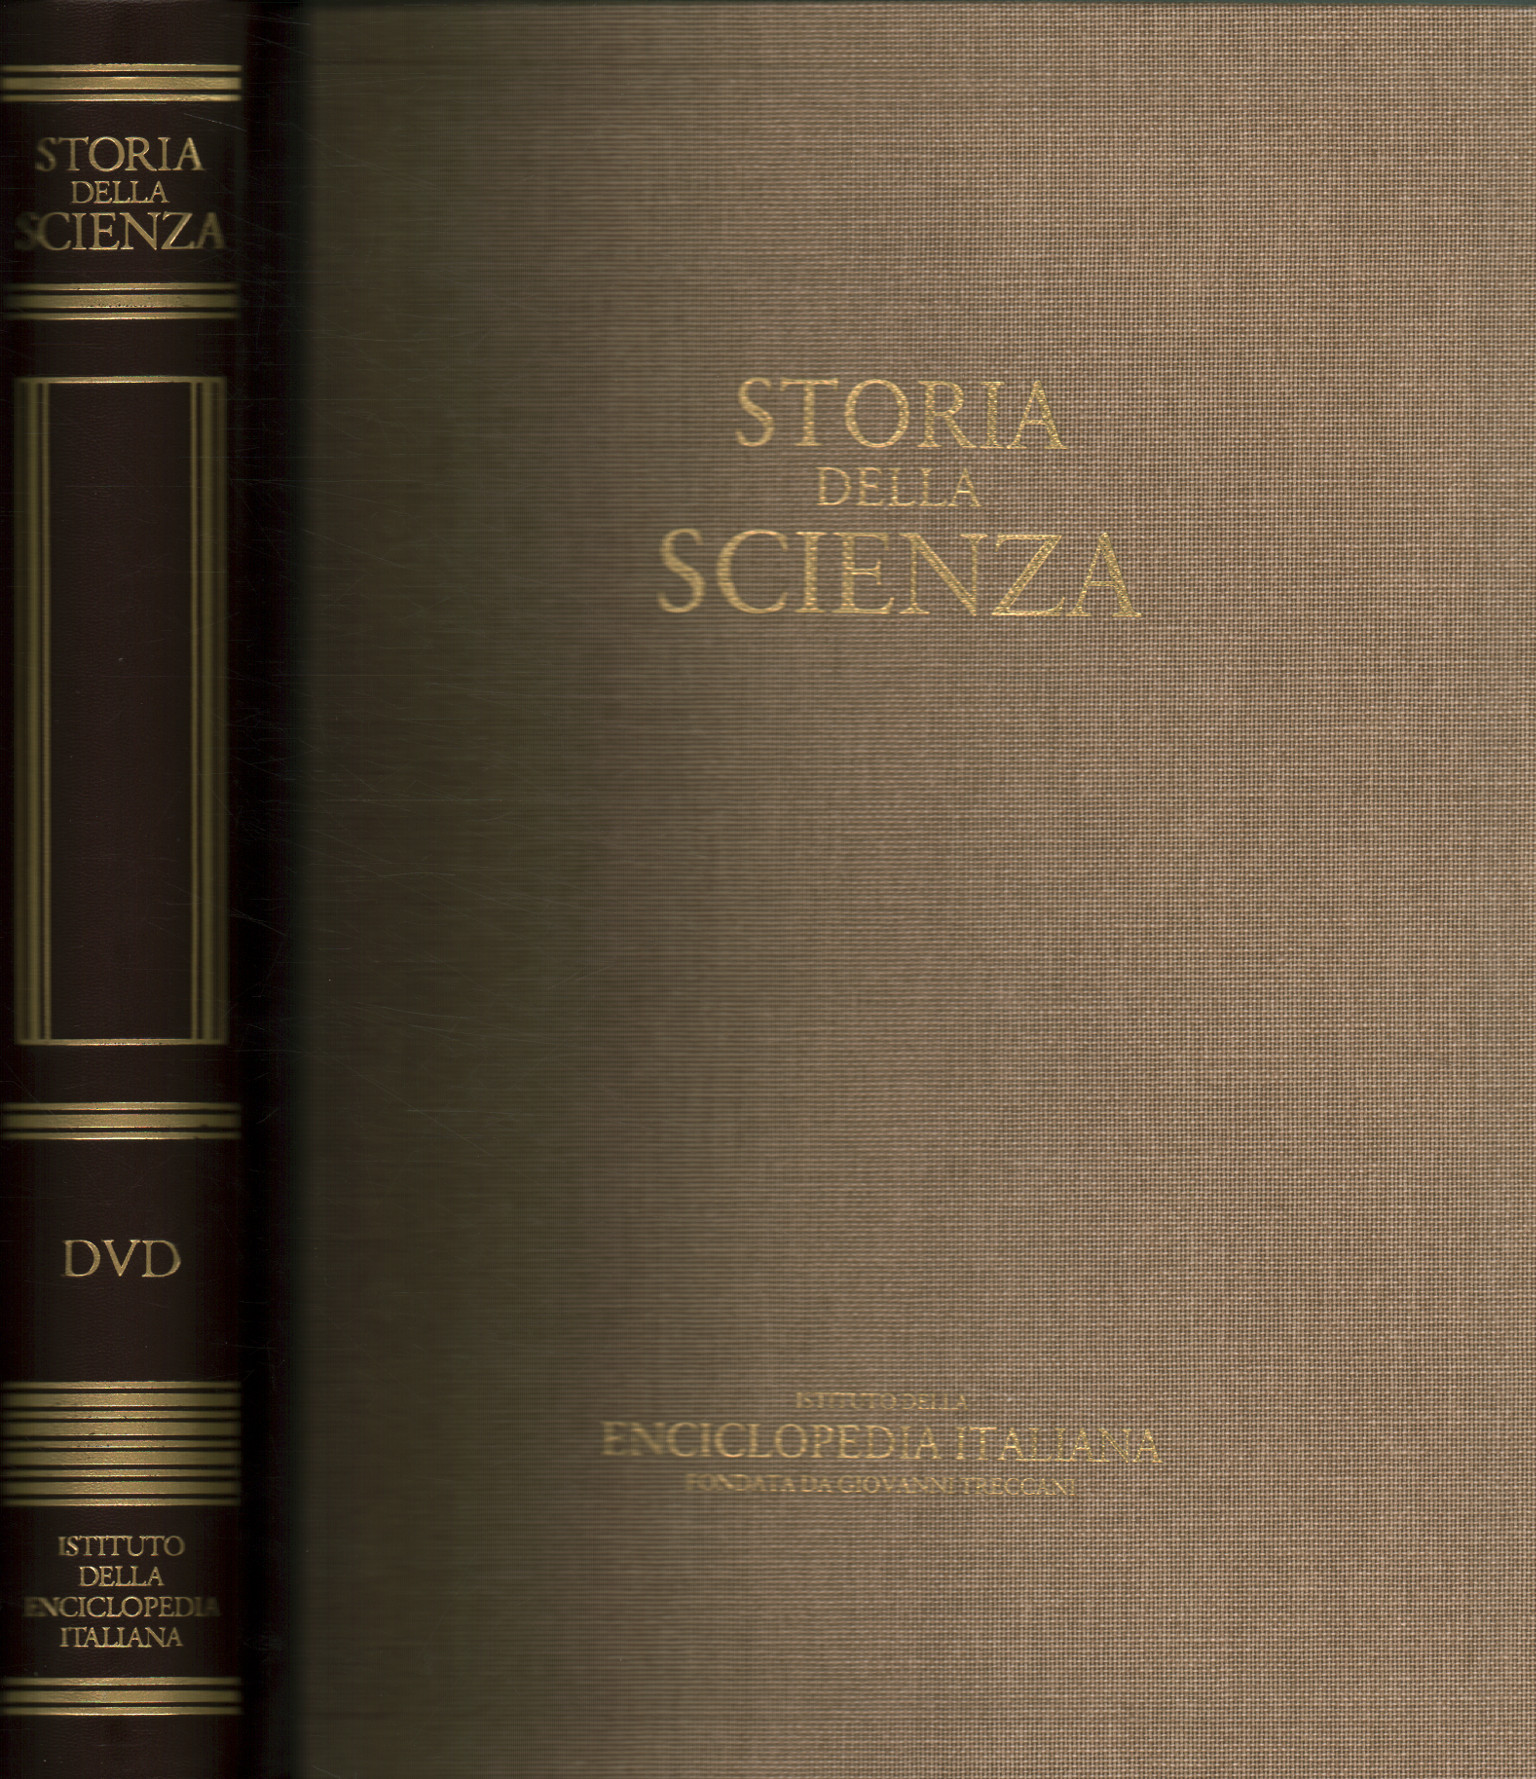 Histoire des sciences. DVD, Histoire des sciences (avec DVD)